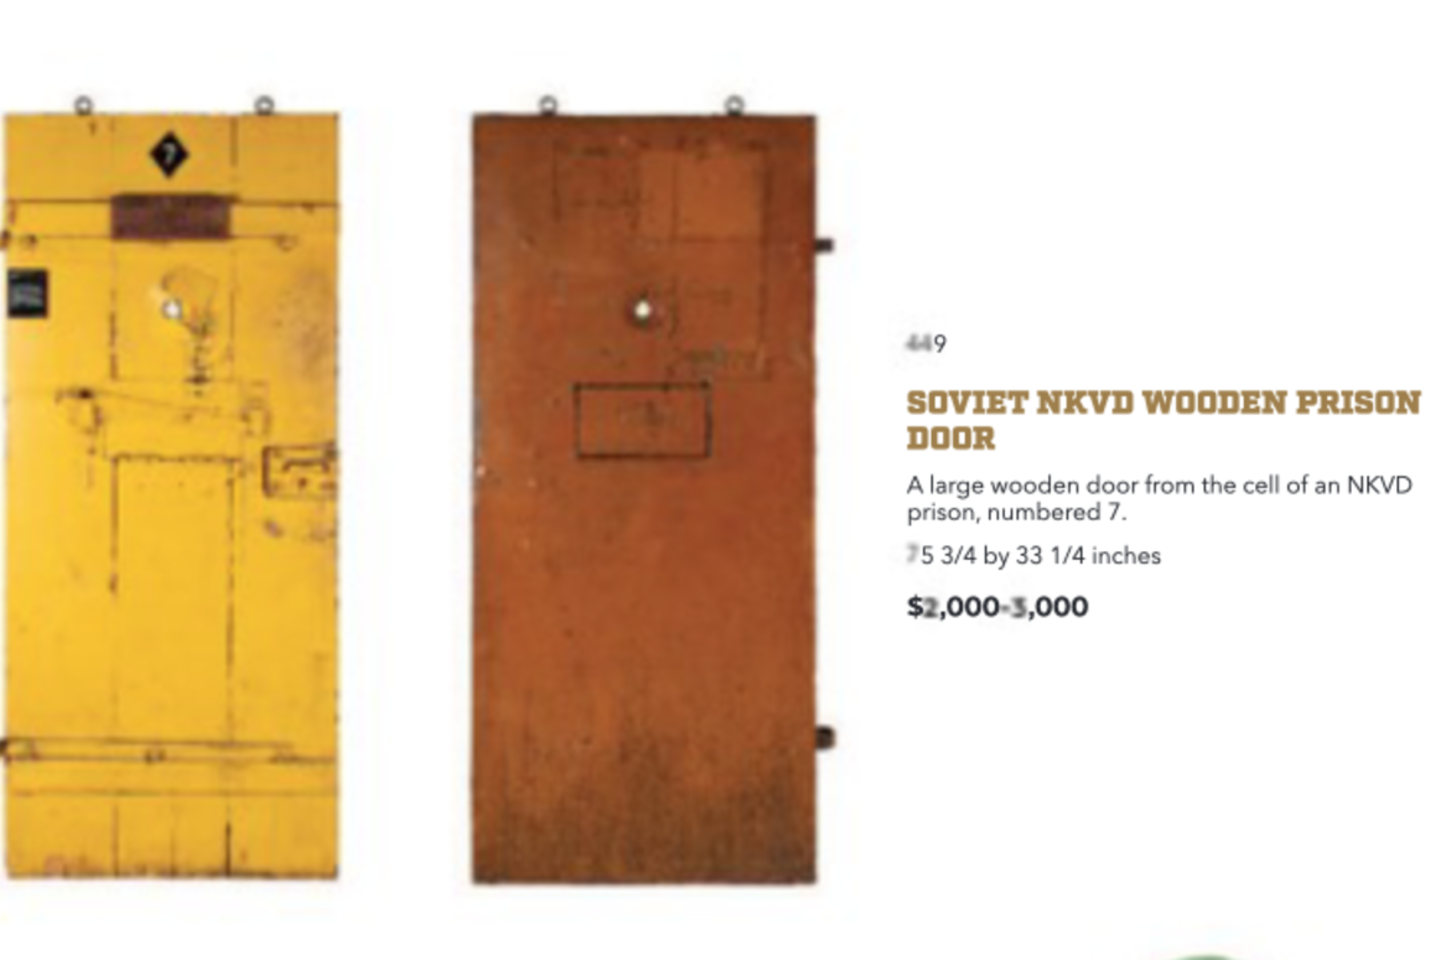  Didelės medinės durys iš NKVD kalėjimo su 7 numeriu.<br> „Julien Auctions“ nuotr.